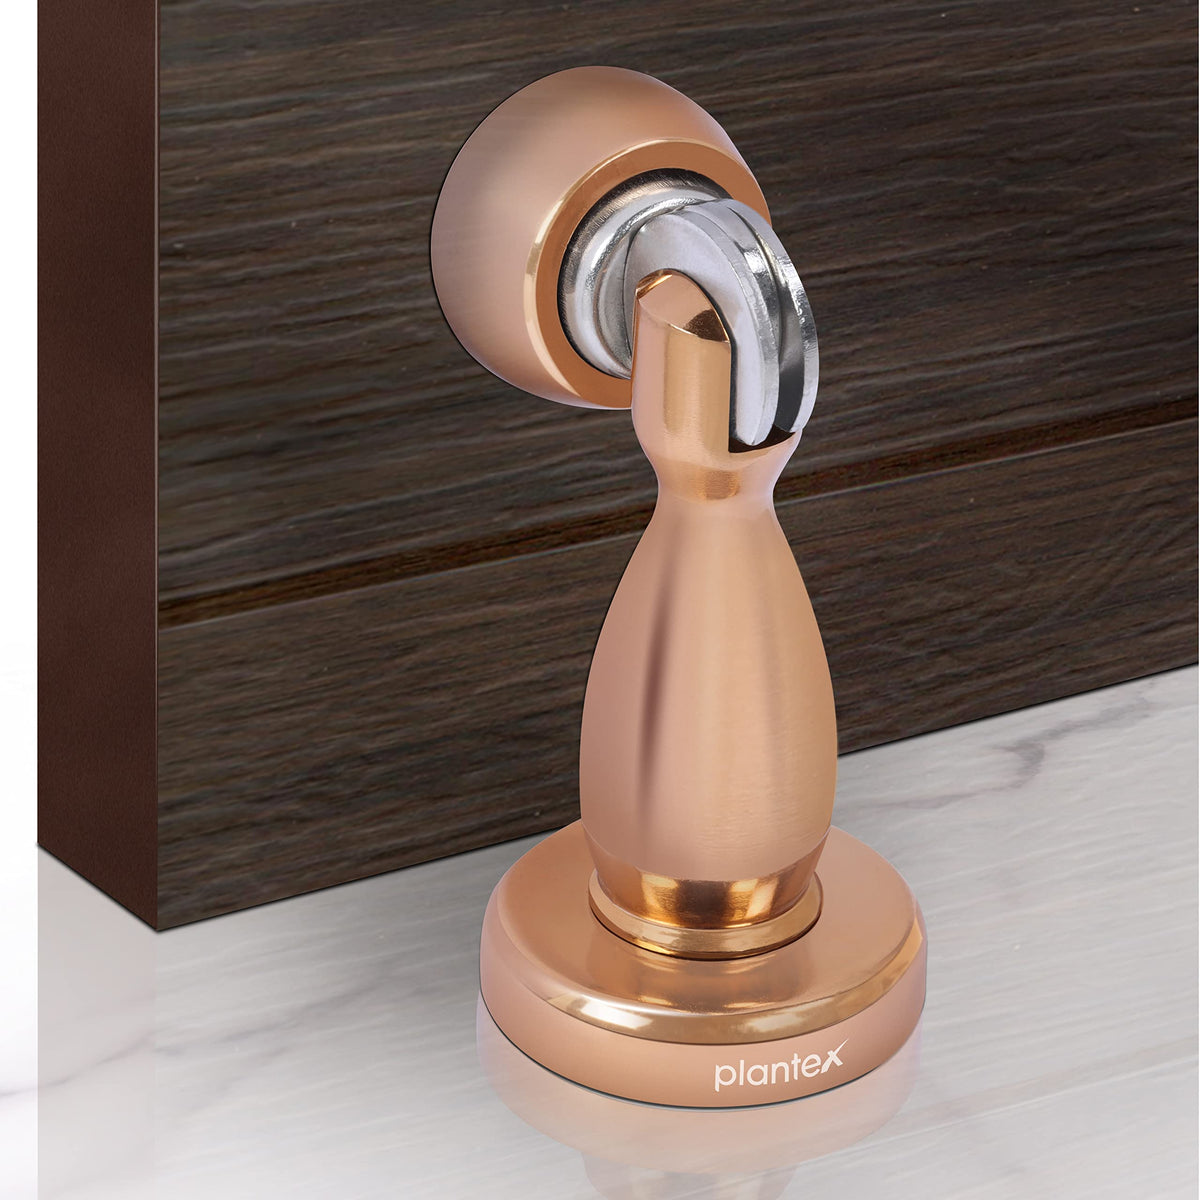 Plantex Magnetic Door Stopper for Home/Magnet Door Catcher/ Door Holder for Main Door/ Bedroom/Office and Hotel Door (4 inch, Rose Gold)